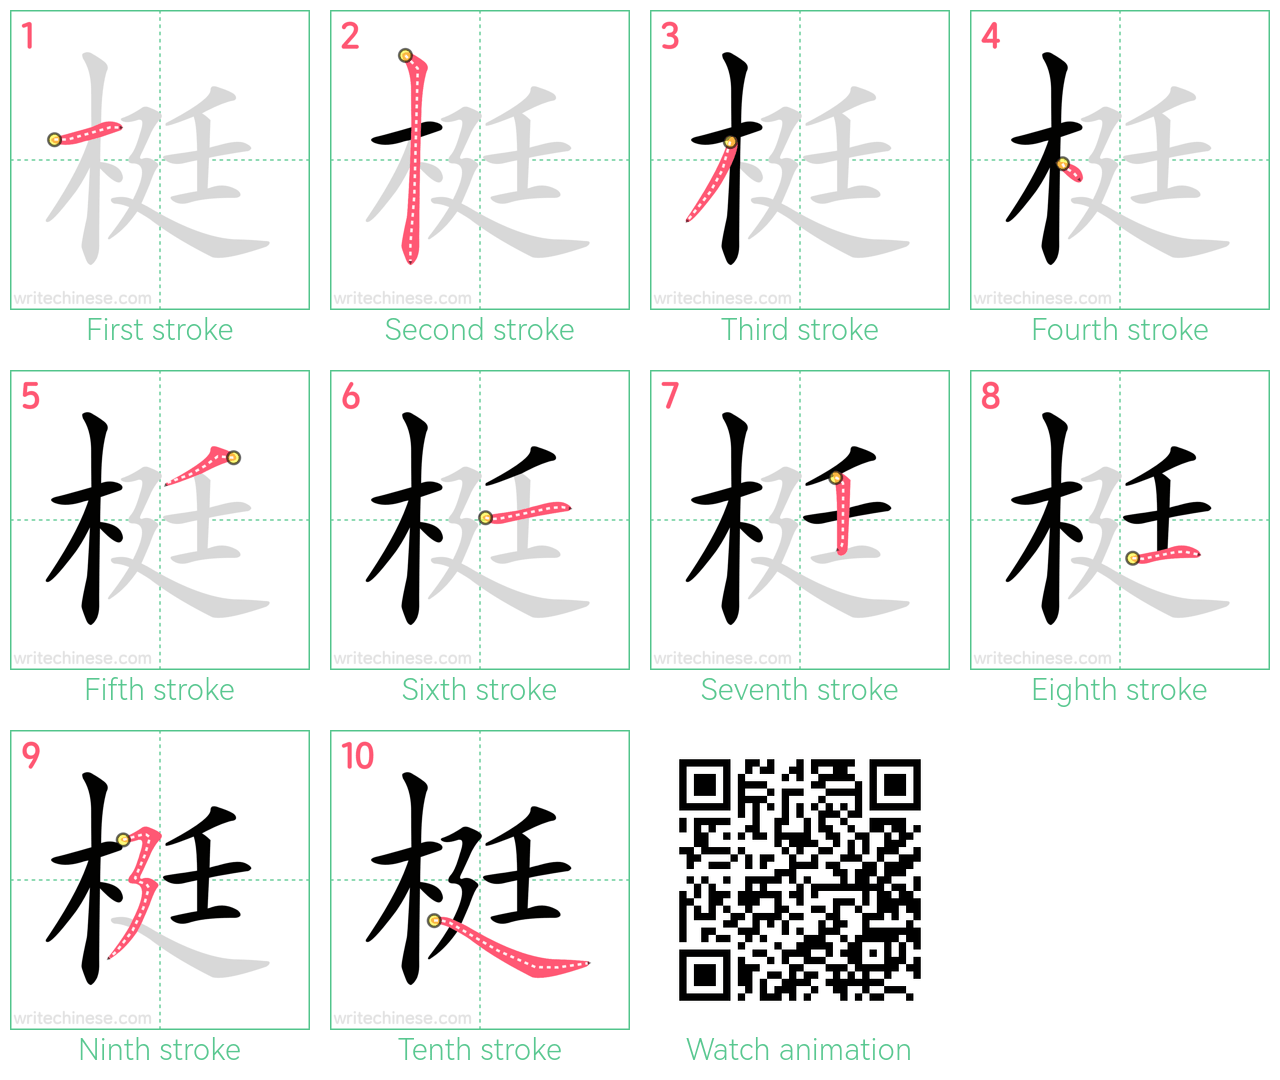 梃 step-by-step stroke order diagrams